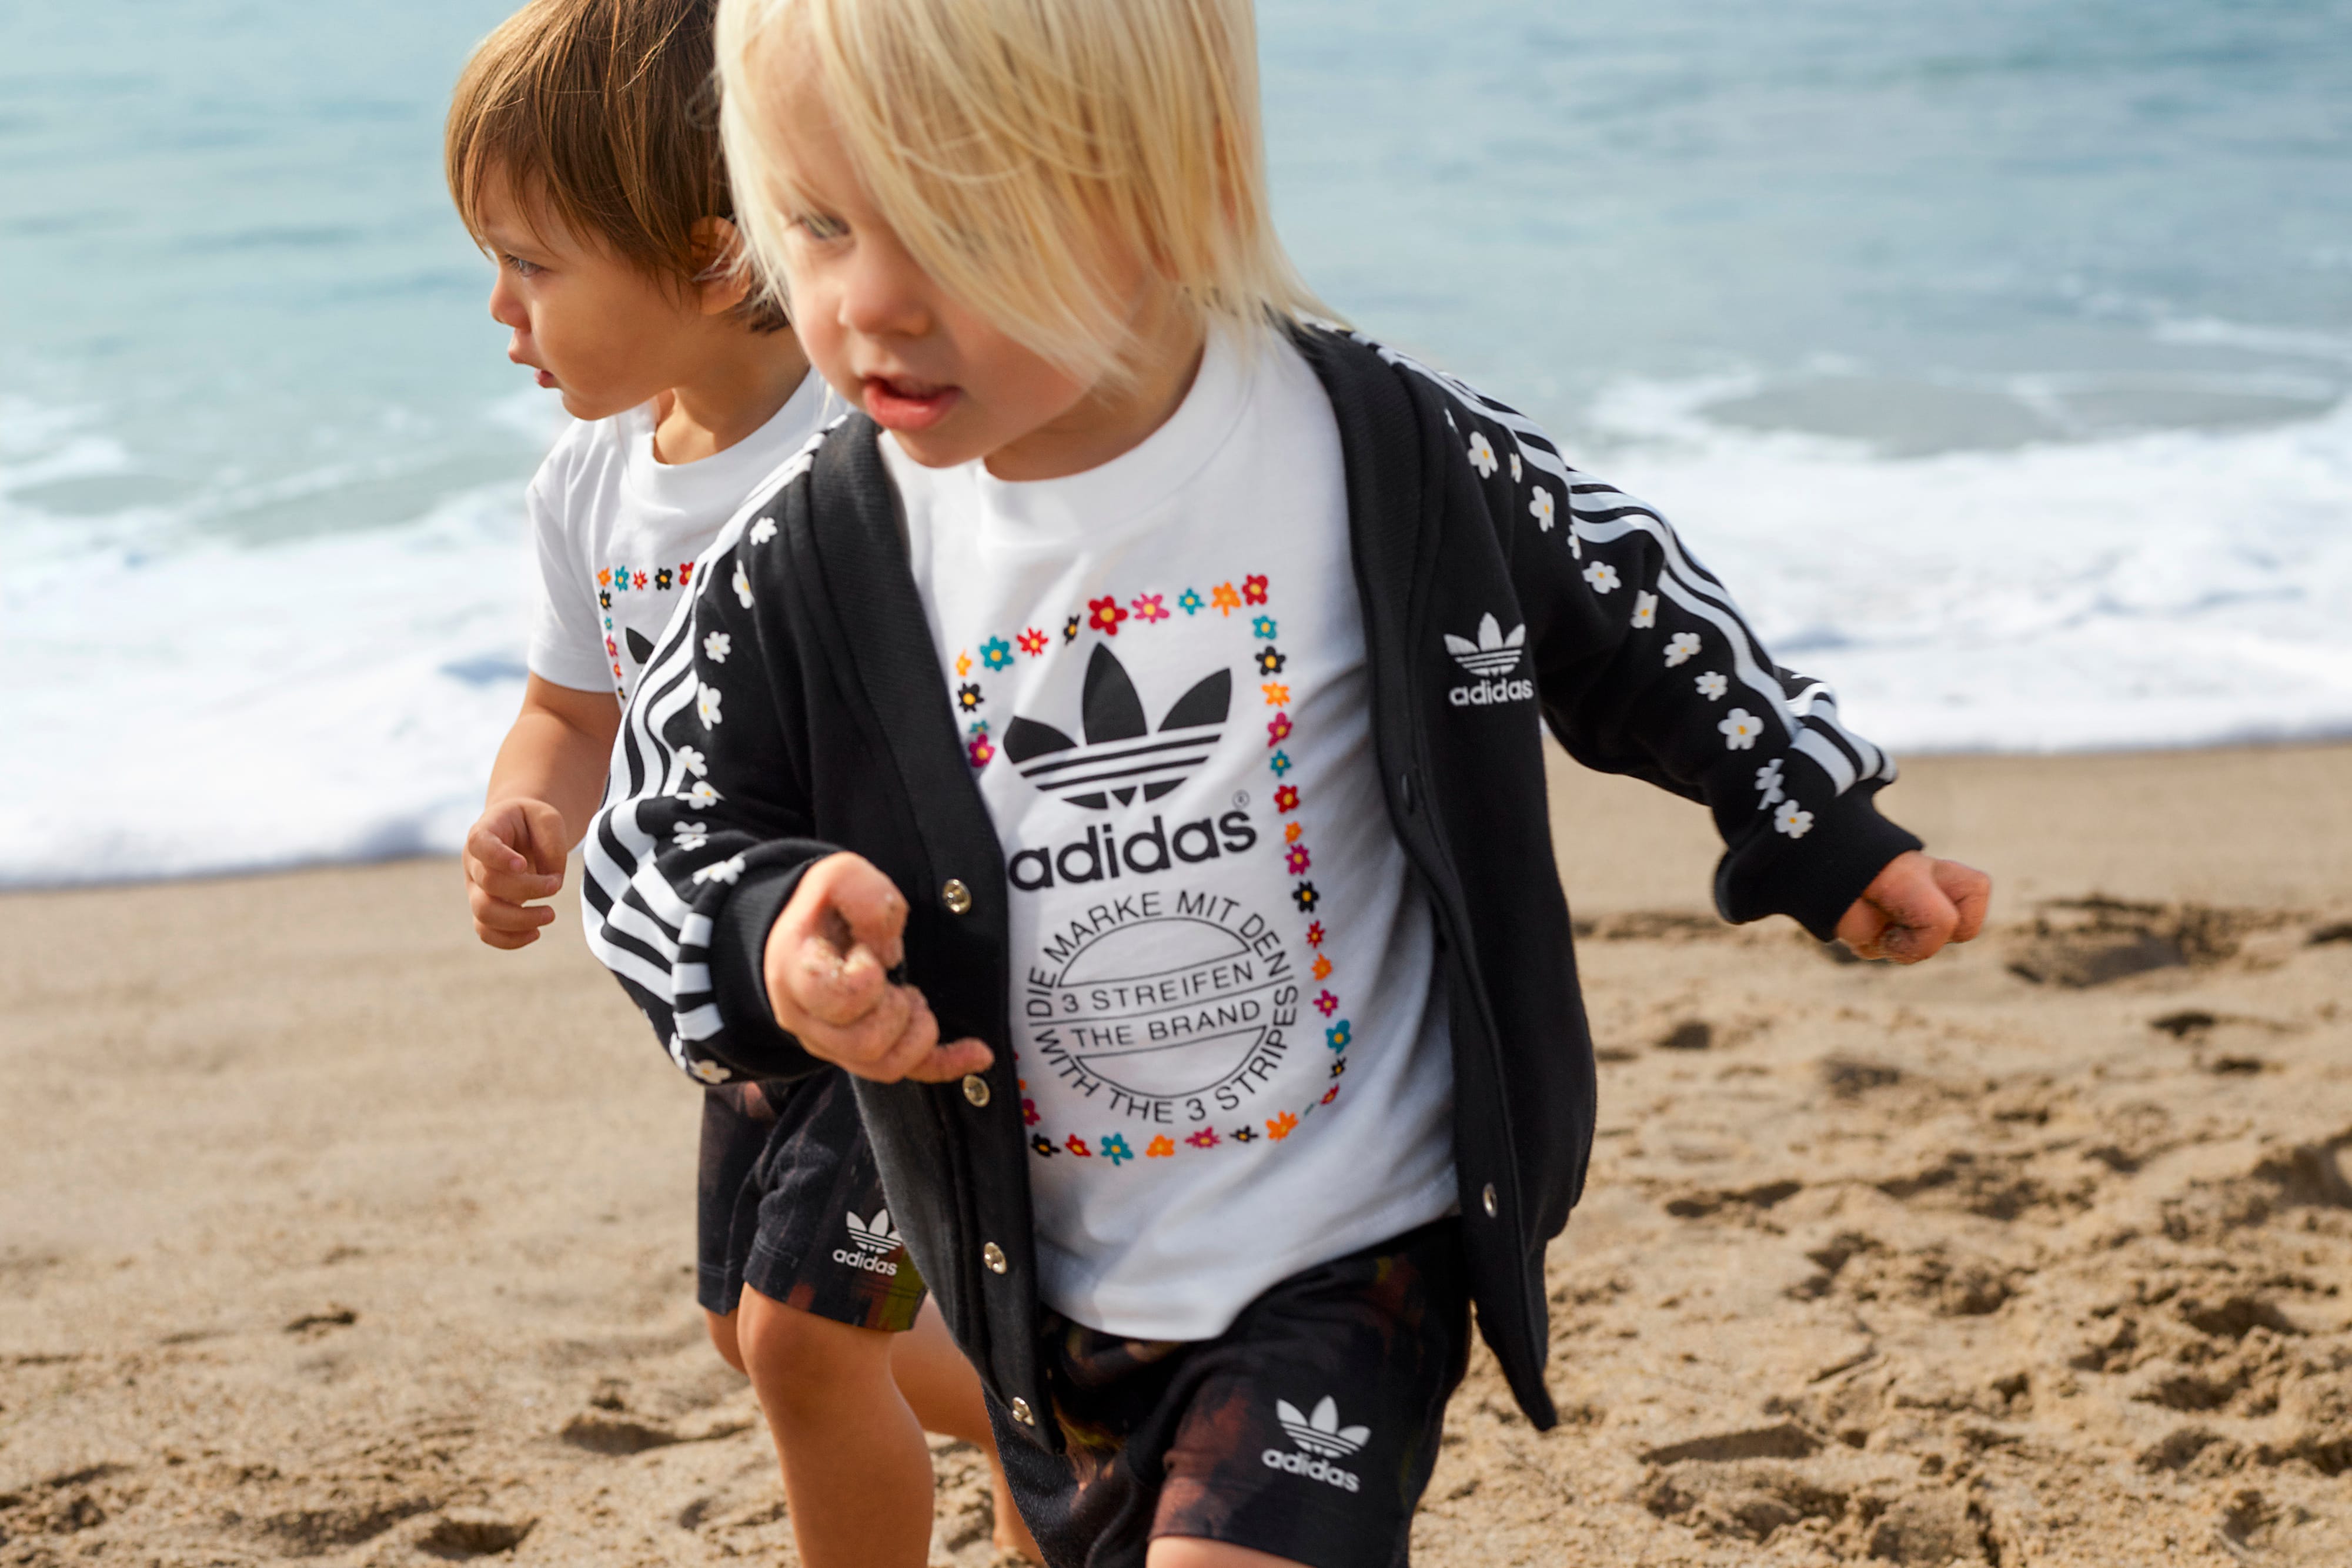 Kids boy girls. Adidas Kids. Детская пляжная одежда. Детская реклама адидас. Adidas adidas Kids.